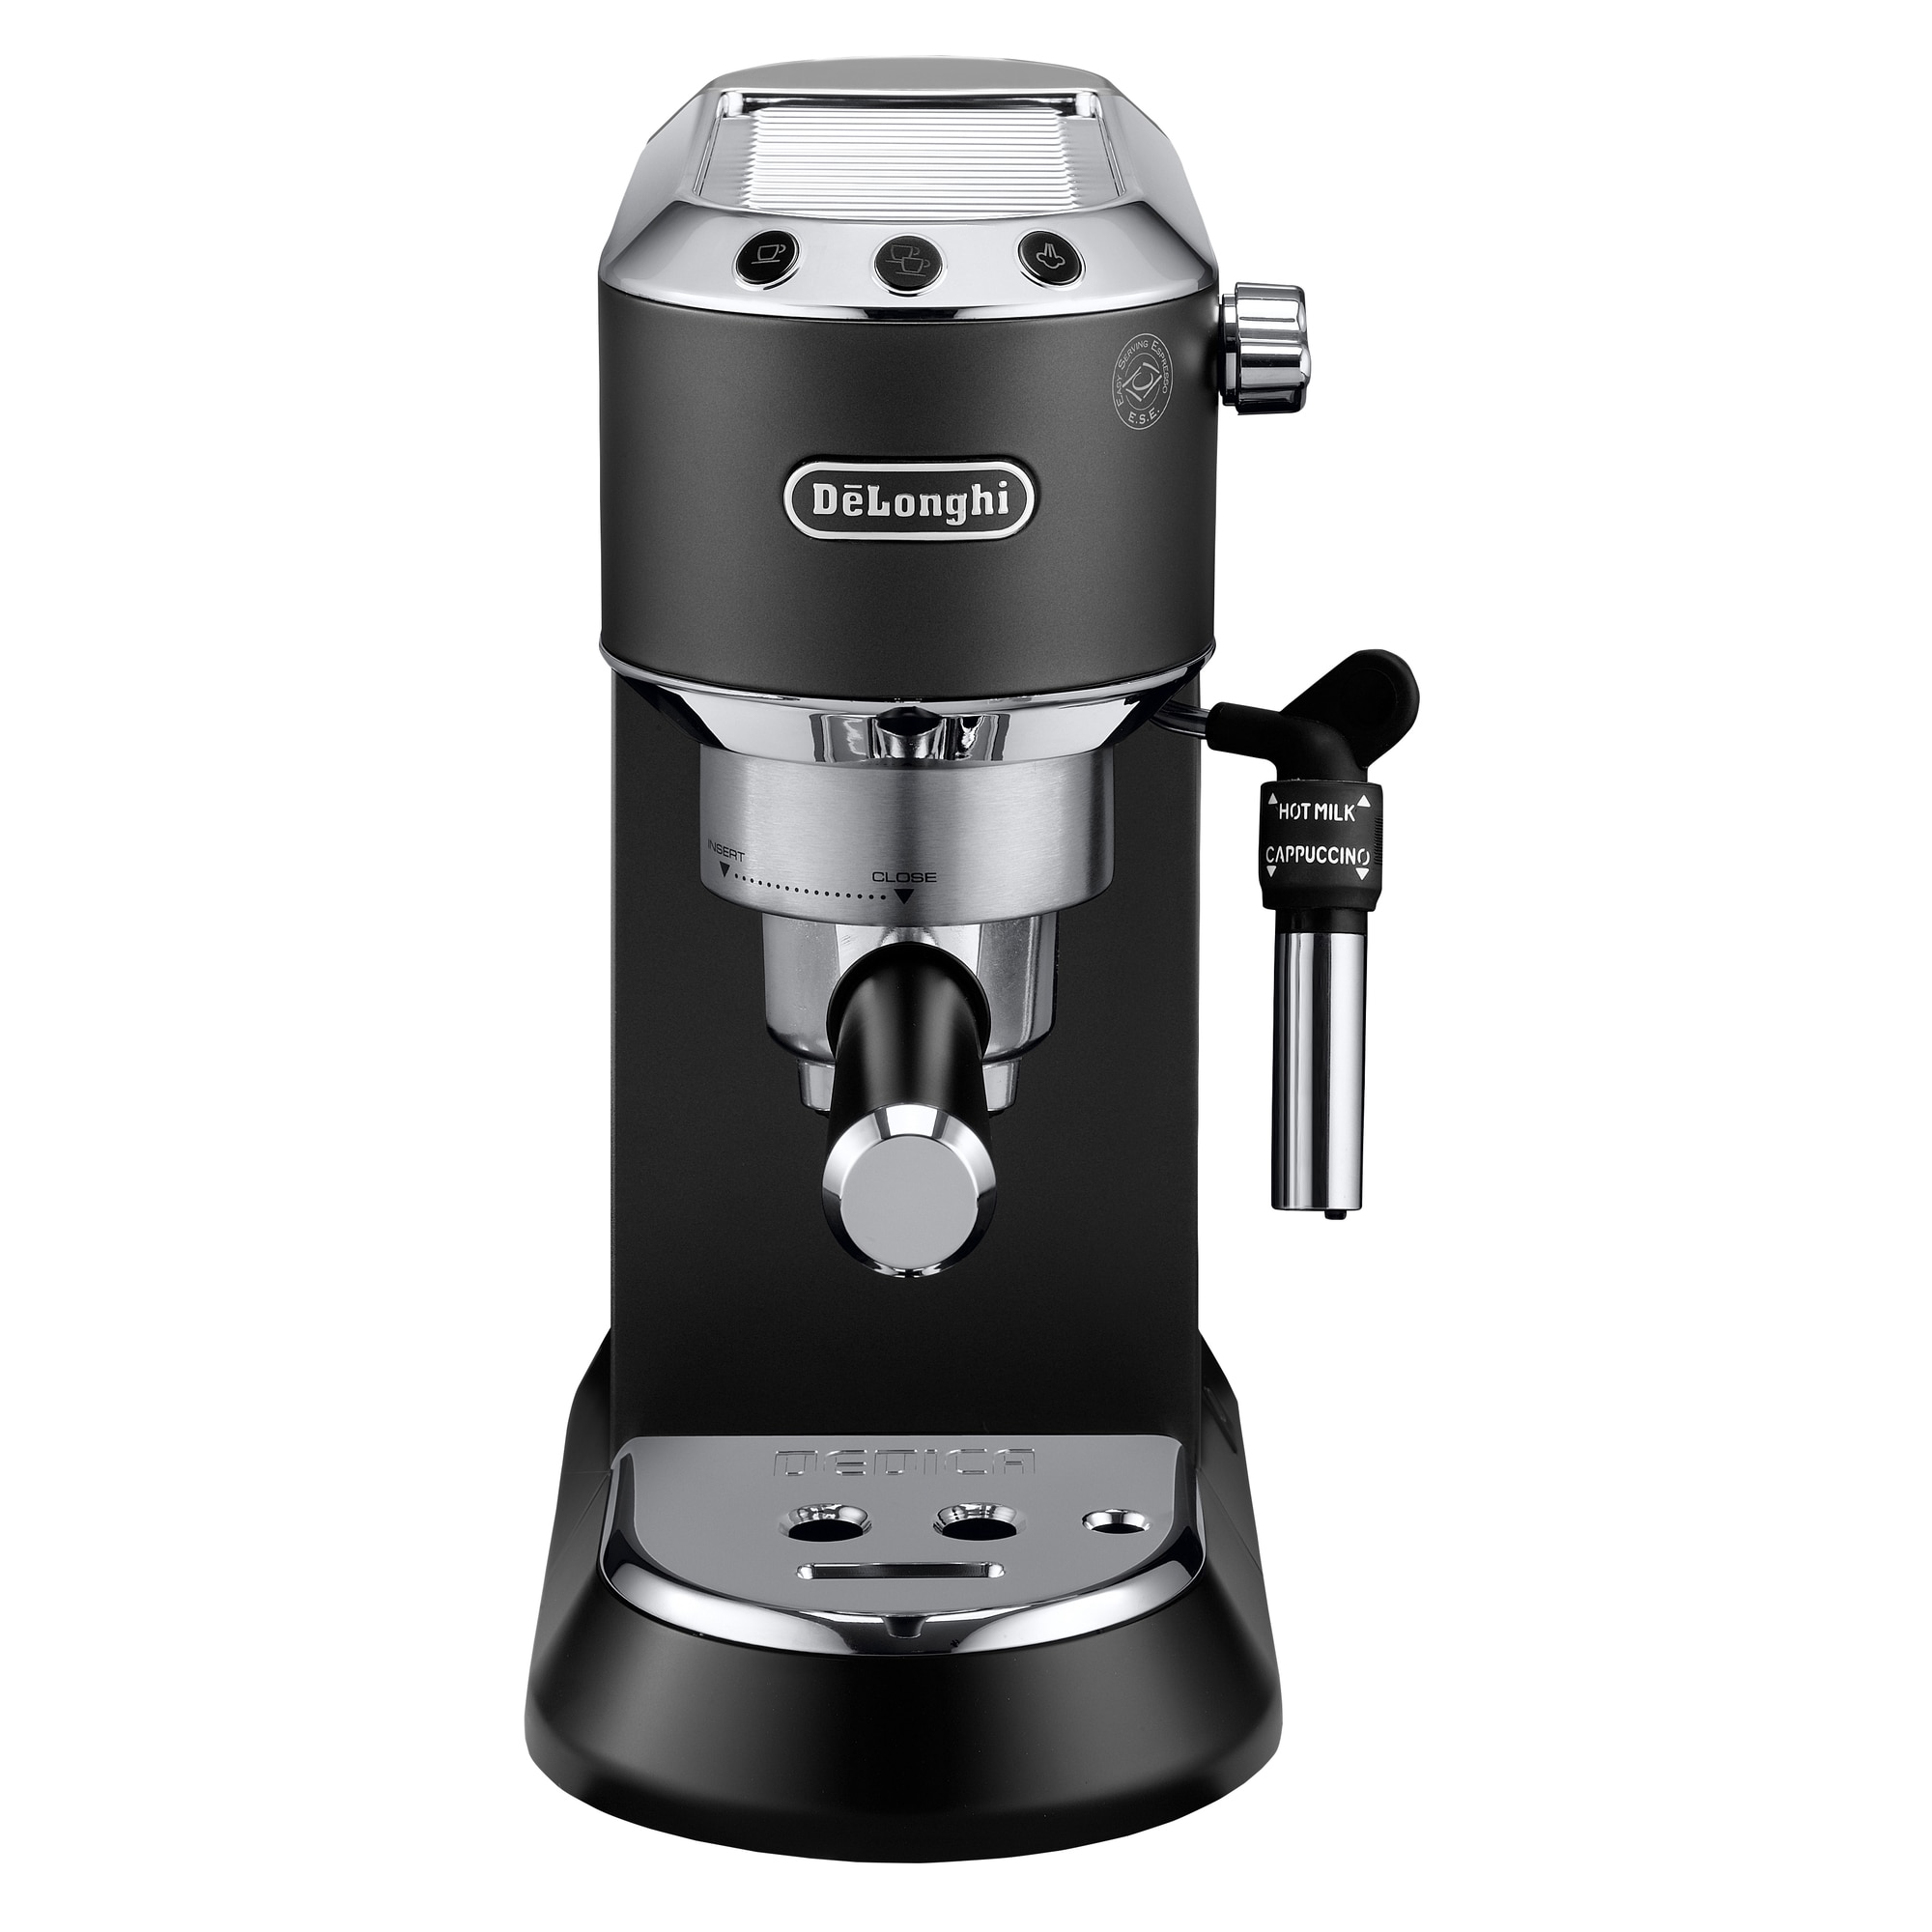 DeLonghi – espressomaskiner, køkkenudstyr og radiatorer - Elgiganten